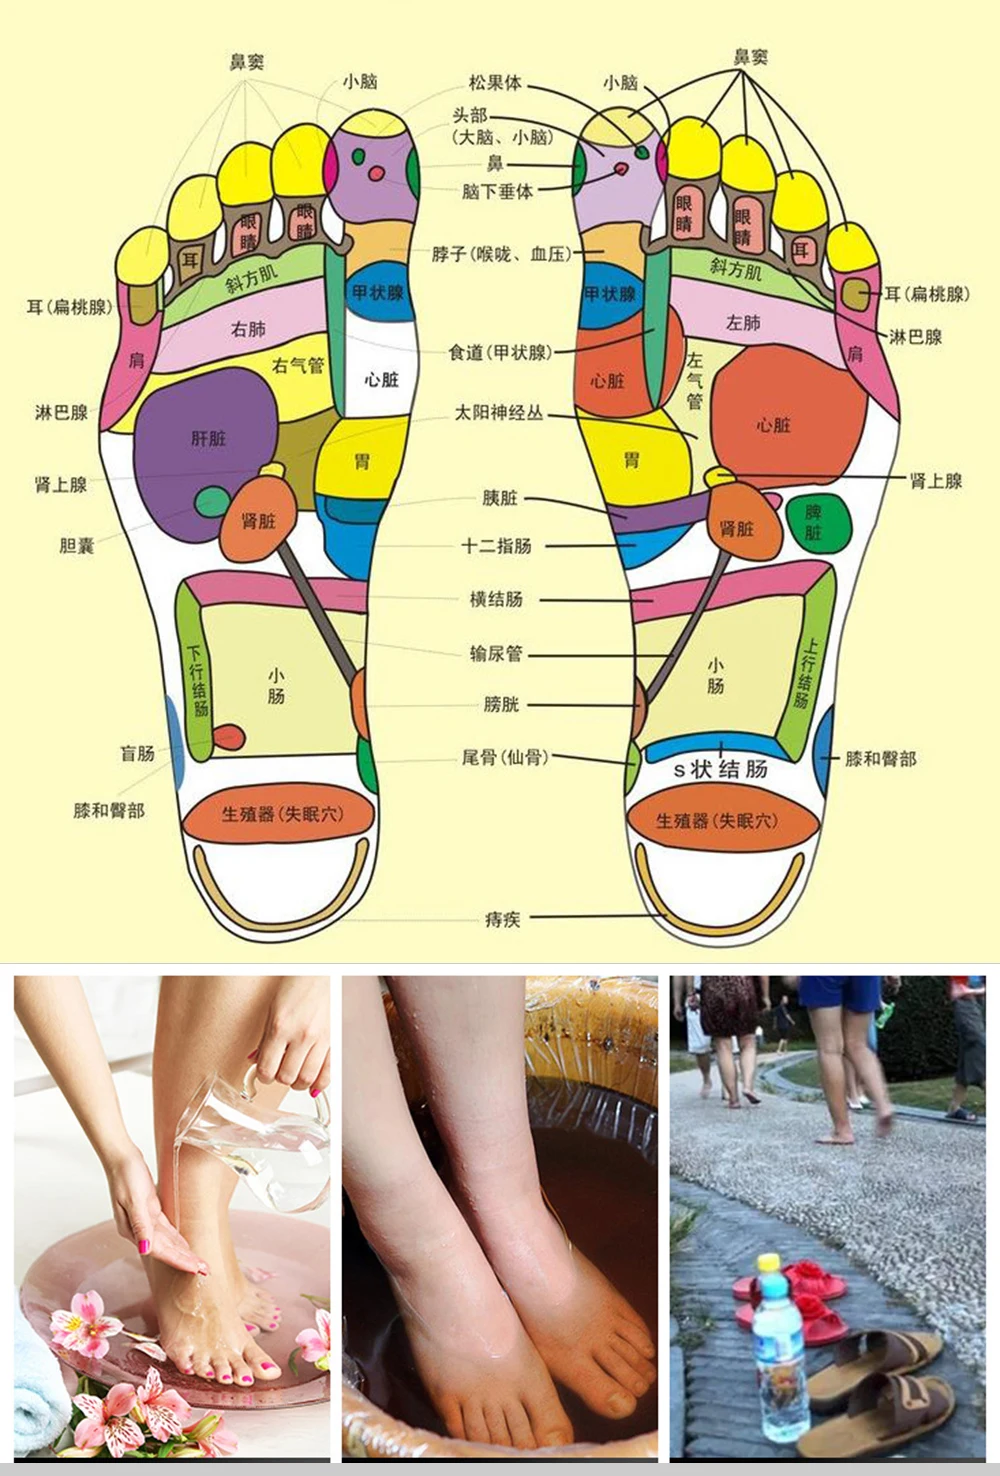 Прозрачные силиконовые магнитотерапевтические массажные стельки, забота о здоровье стельки для ног, магнитные стельки для мужчин и женщин, Удобные стельки для обуви